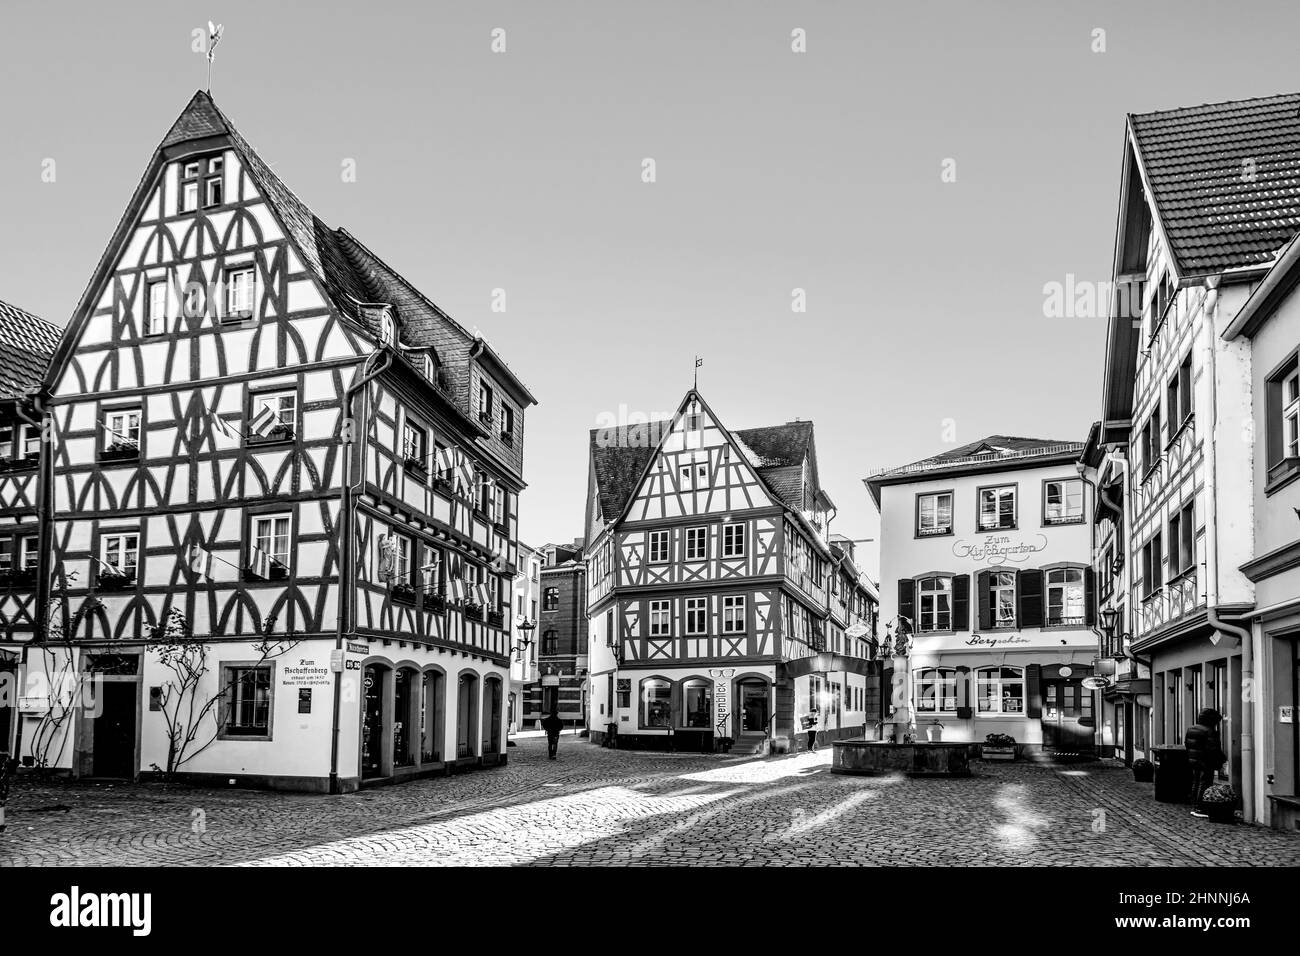 Historisches Stadtzentrum von Mainz mit alten traditionellen Fachwerkhäusern Stockfoto